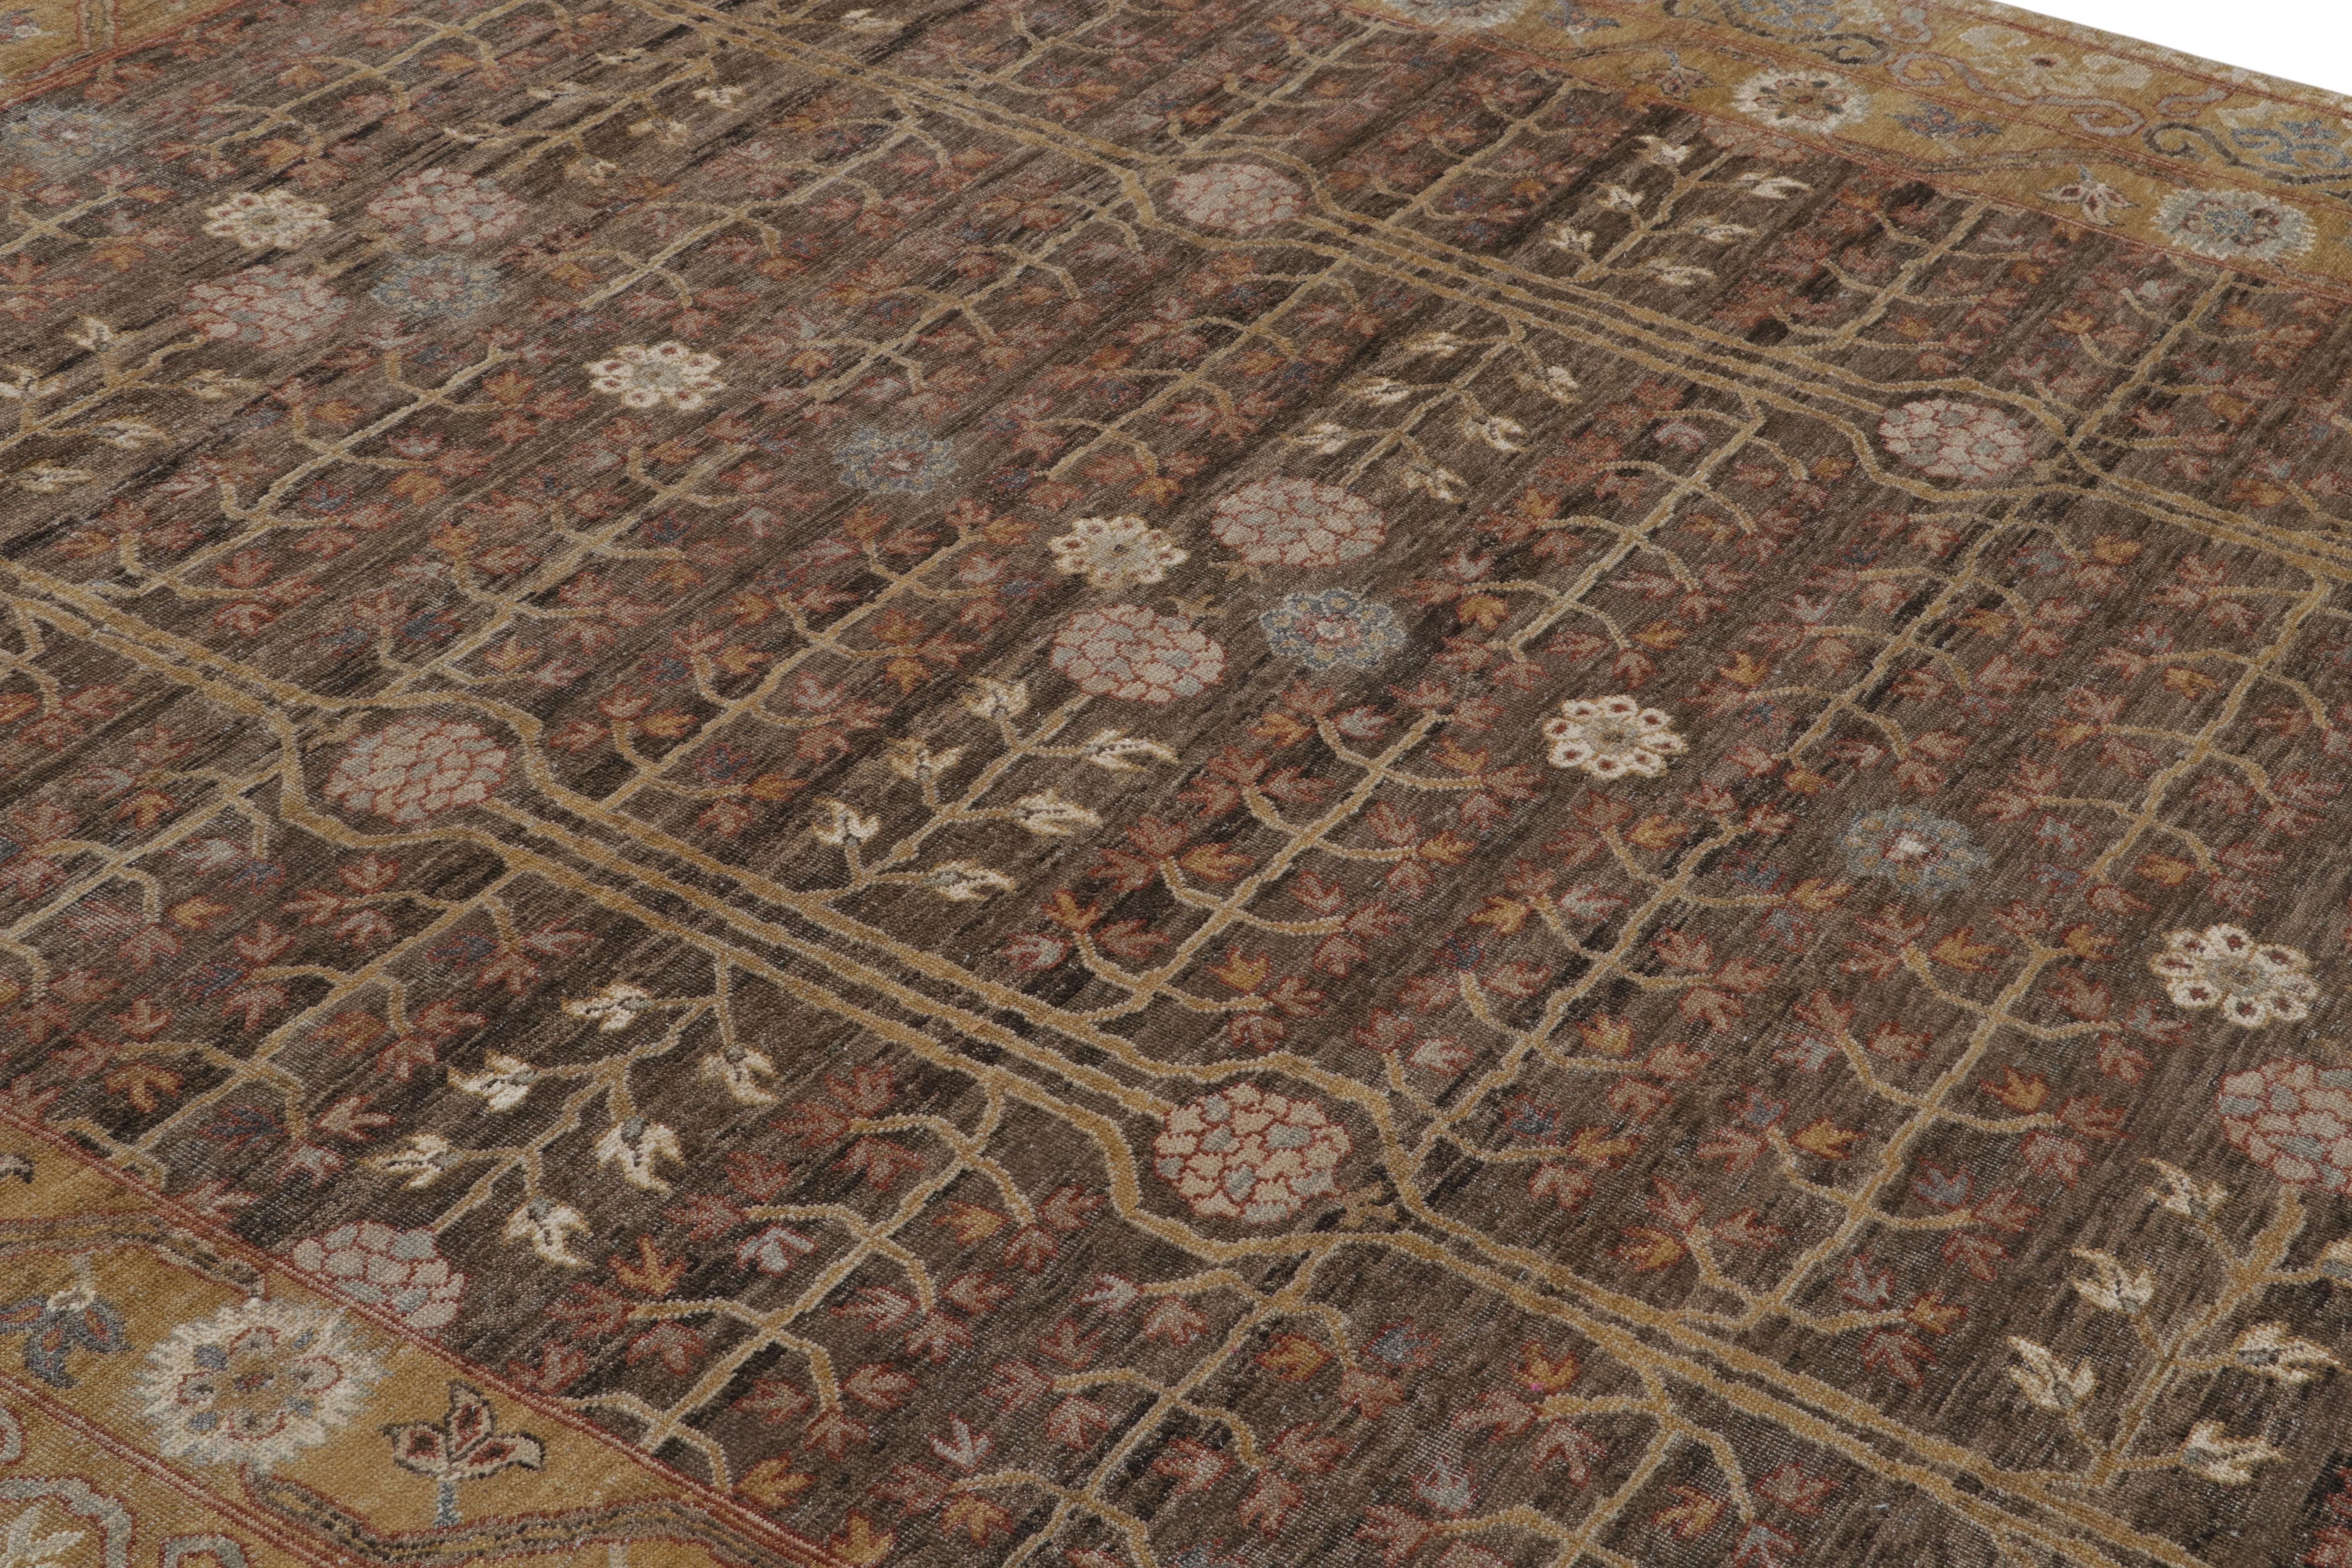 Dieser neue 8x10 große Teppich aus der Modern Classics Collection'S von Rug & Kilim ist aus Wolle handgeknüpft und von antiken Khotan-Teppichen inspiriert.

Über das Design:

Bei diesem Stück unterstreichen besonders satte Braun- und Goldtöne das